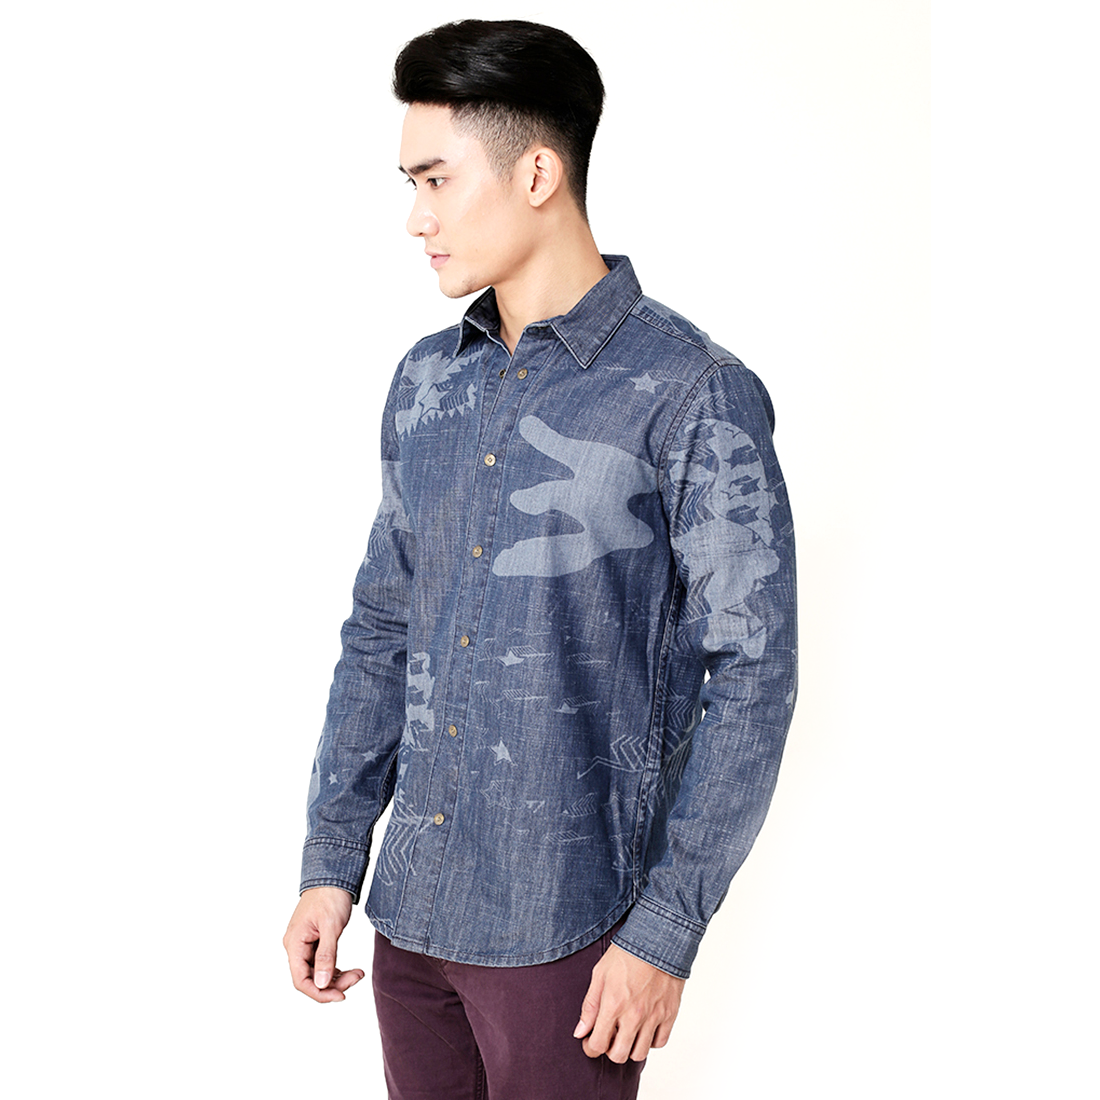 Dịch vụ giặt áo sơmi vest comple suit chất lượng chuyên nghiệp giá rẻ  Tp HCM  Thế Giới Giặt Sấy Nhanh Sạch Rẻ Sài Gòn